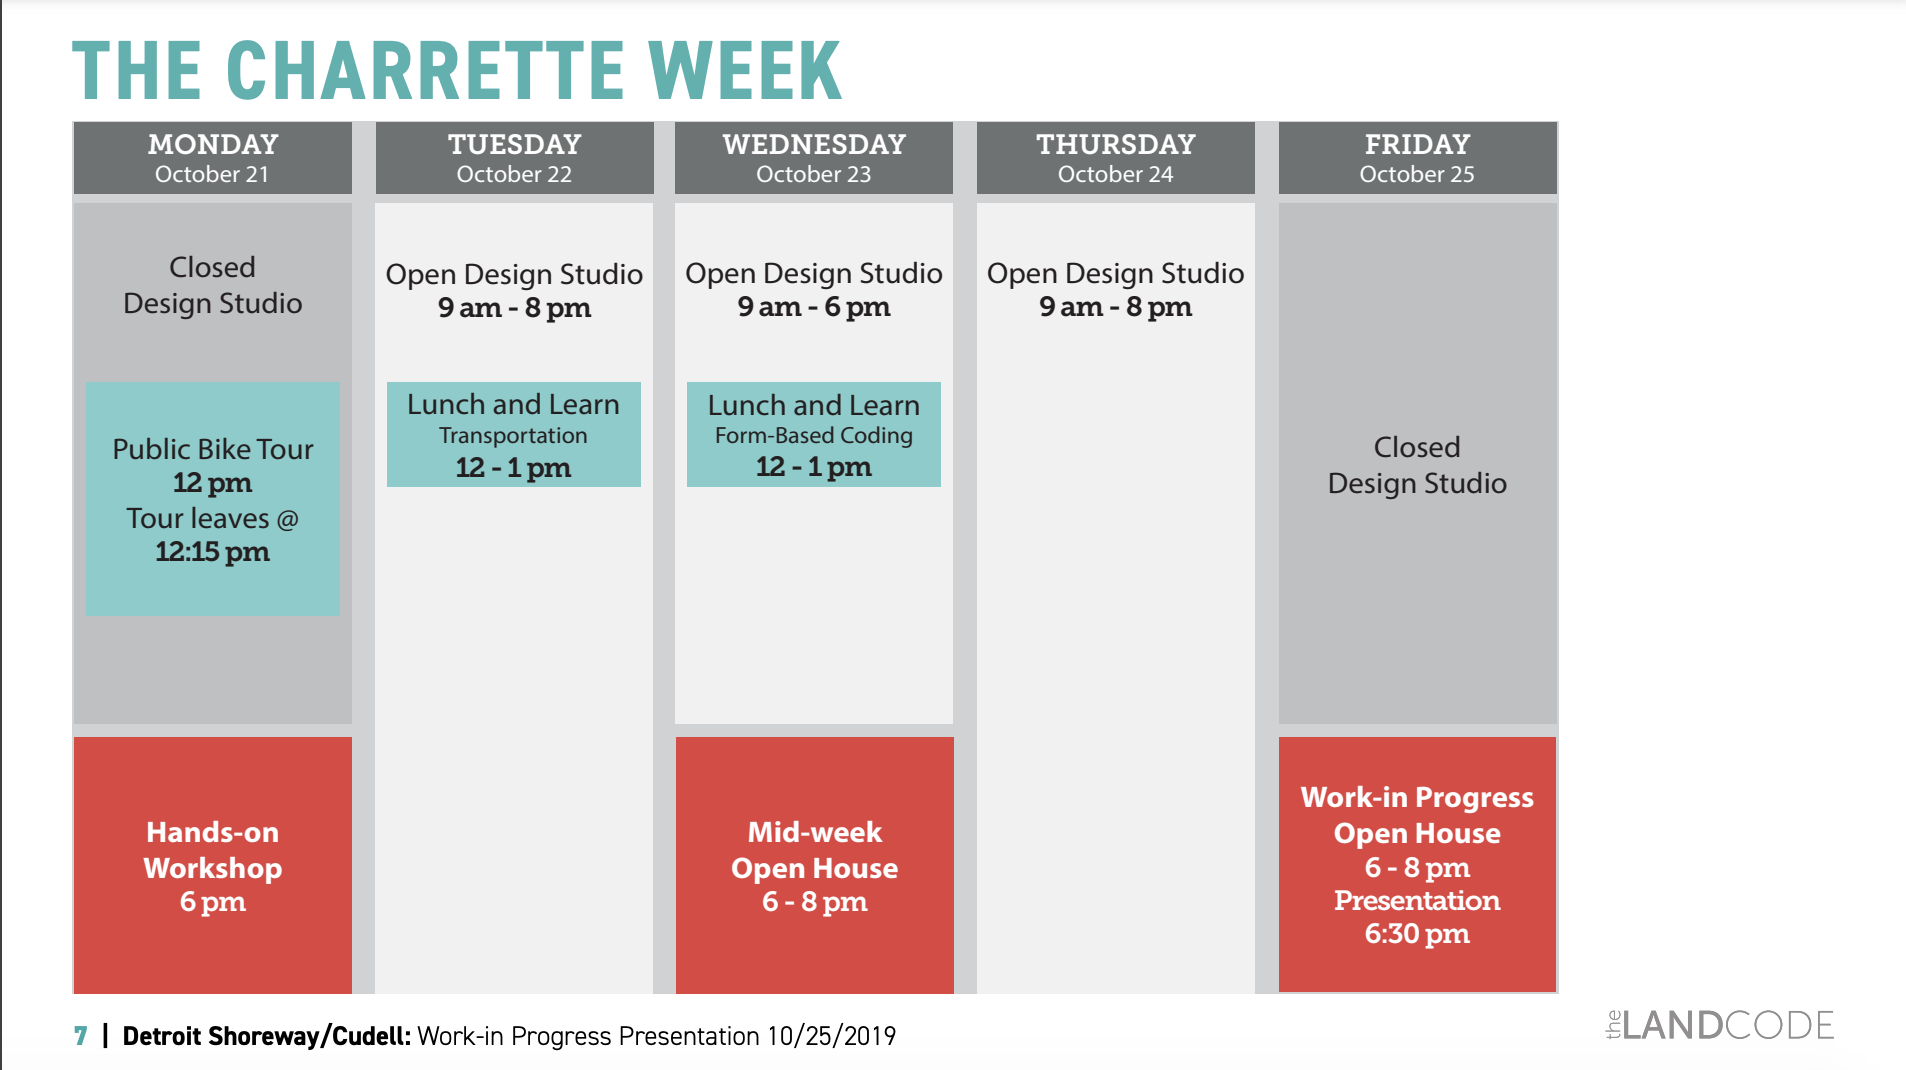 The Detroit Shoreway/Cudell Charrette week agenda